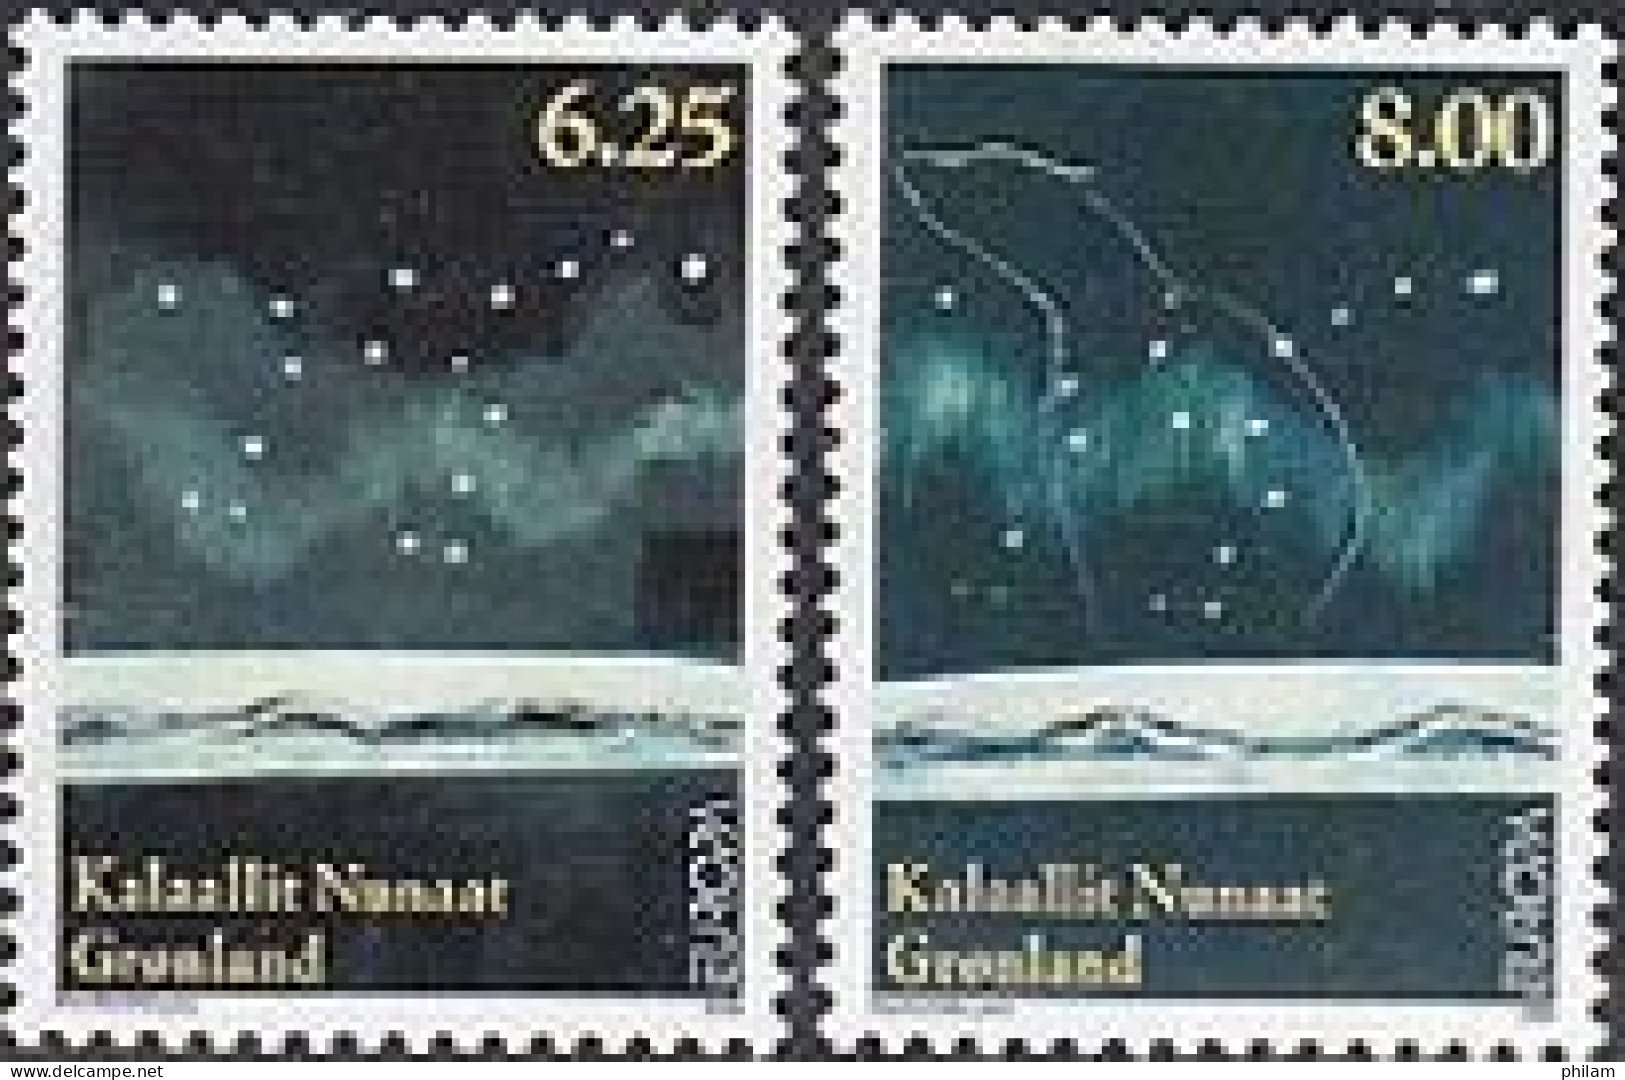 GROENLAND 2009 - Europa - L'astronomie -  Gommés - 2 V. - Ungebraucht